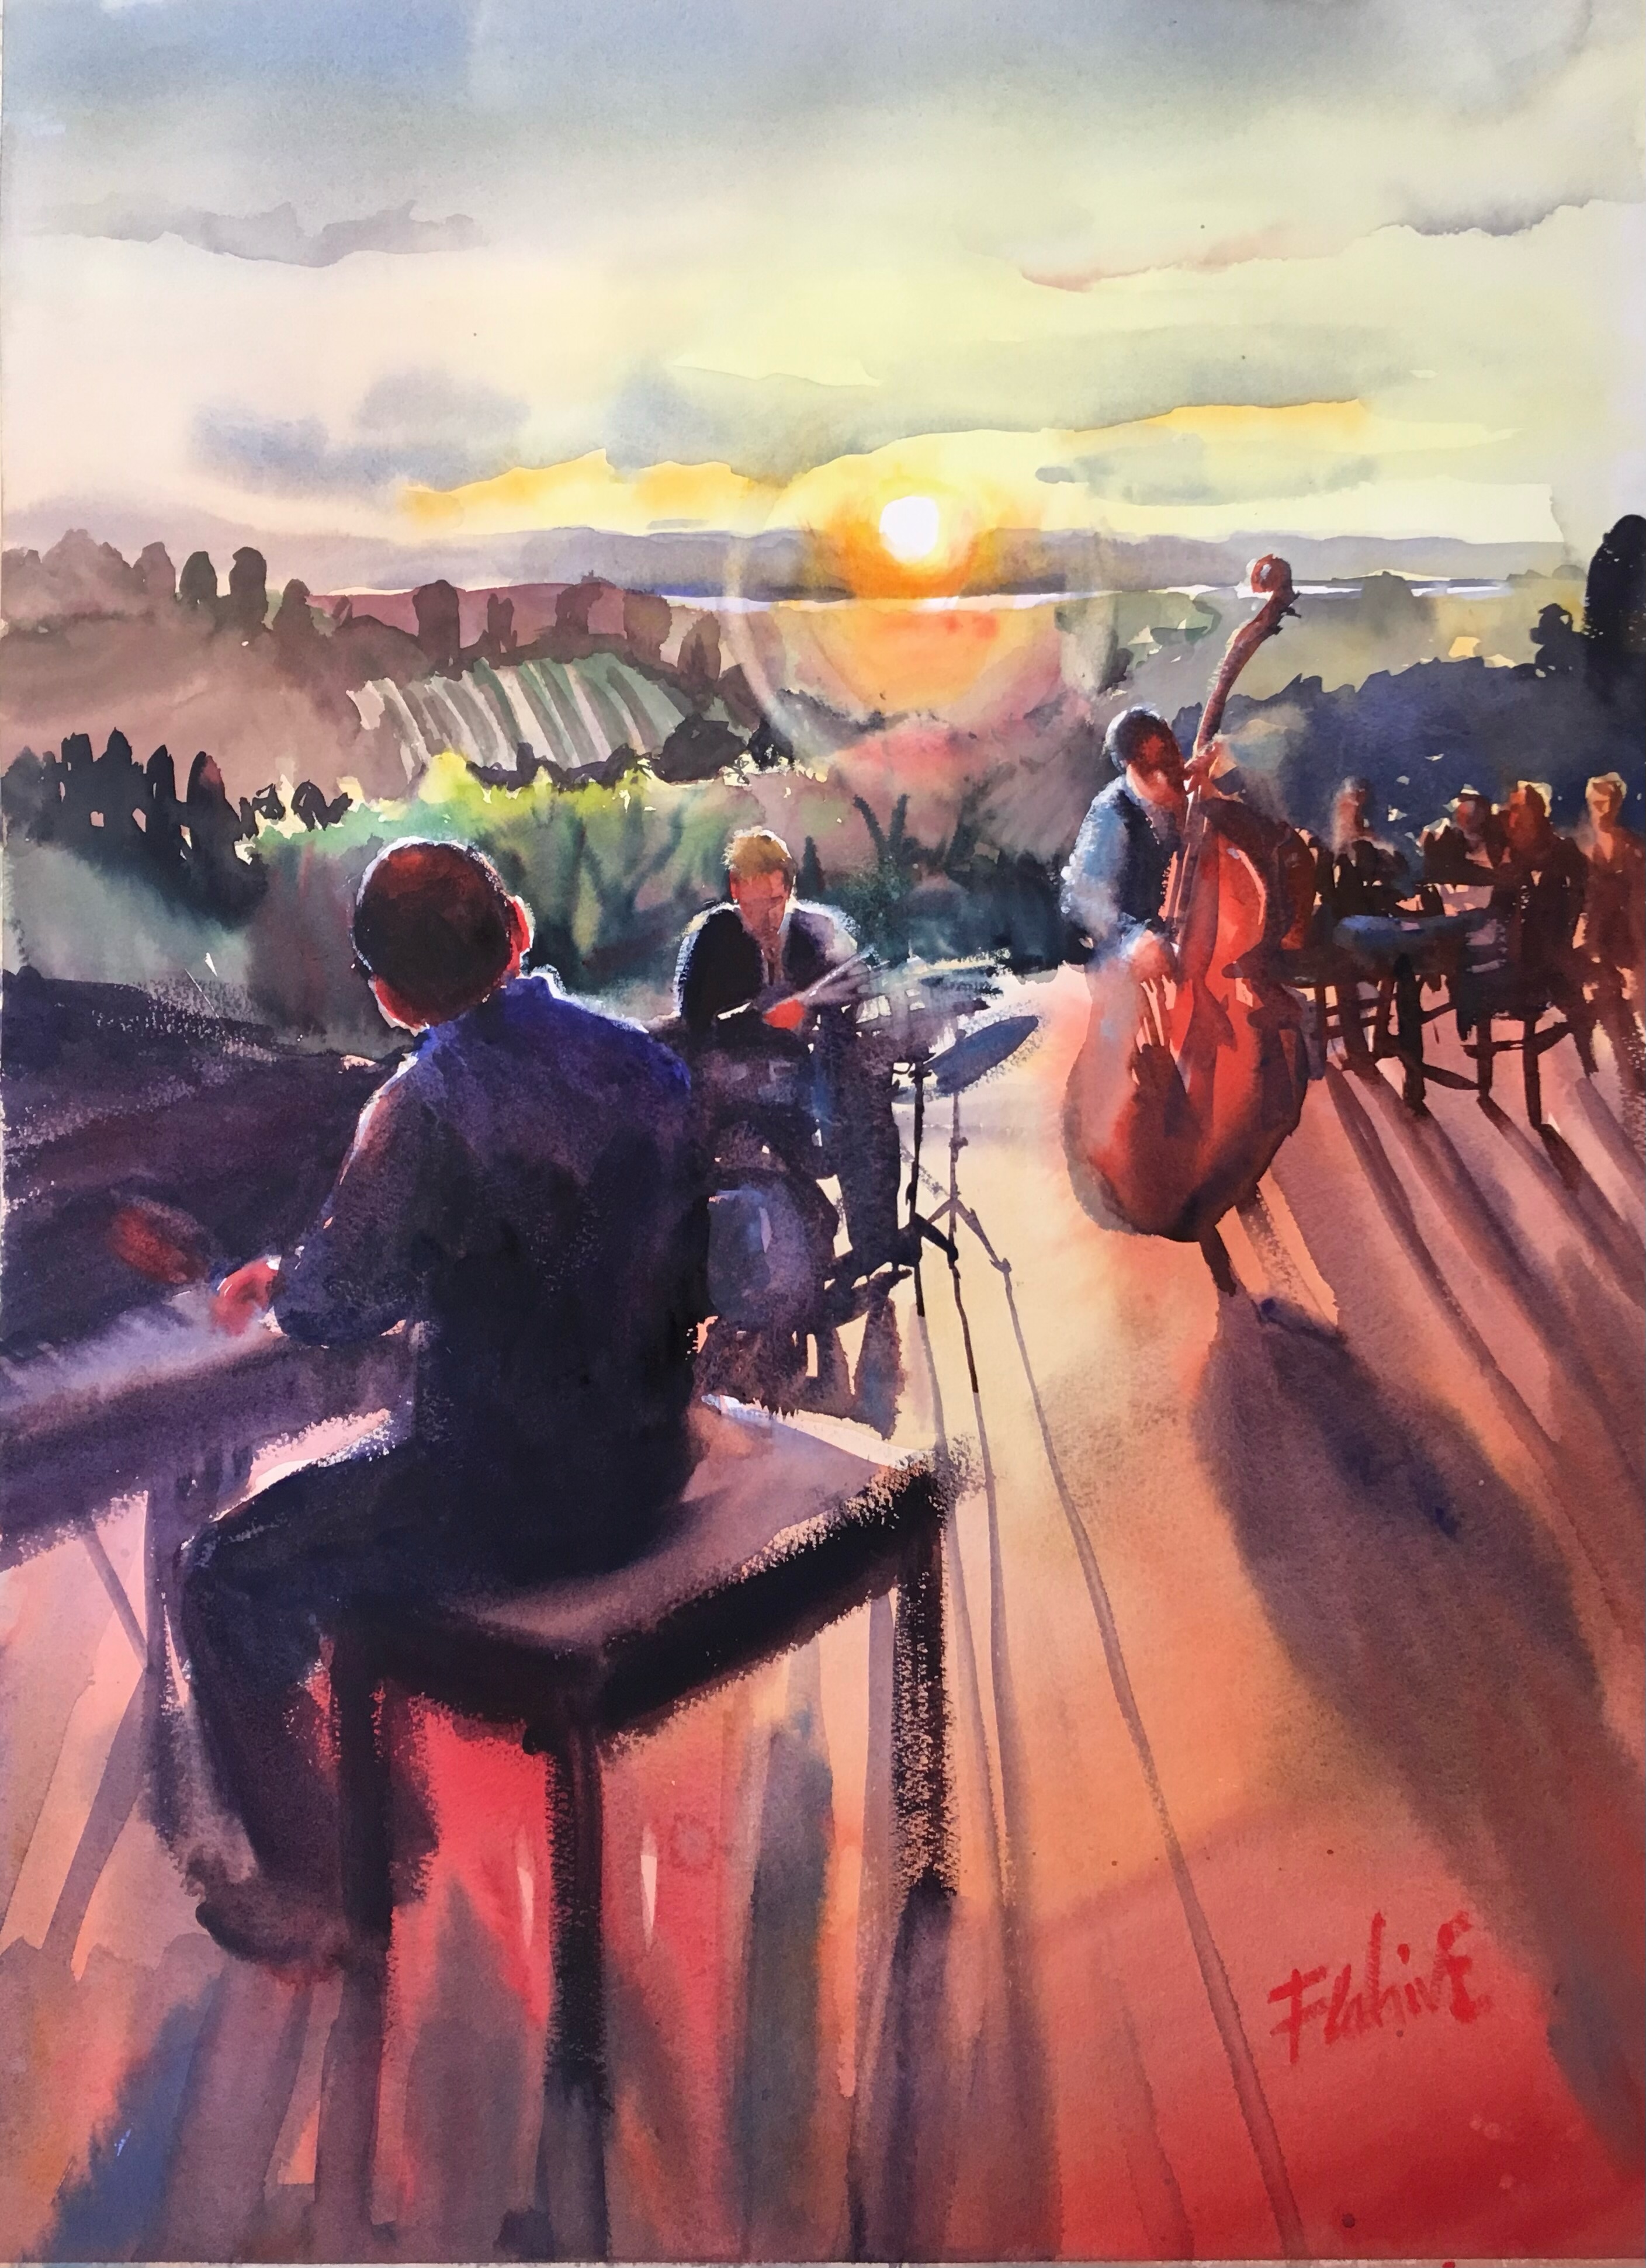 Jazz at Sunset